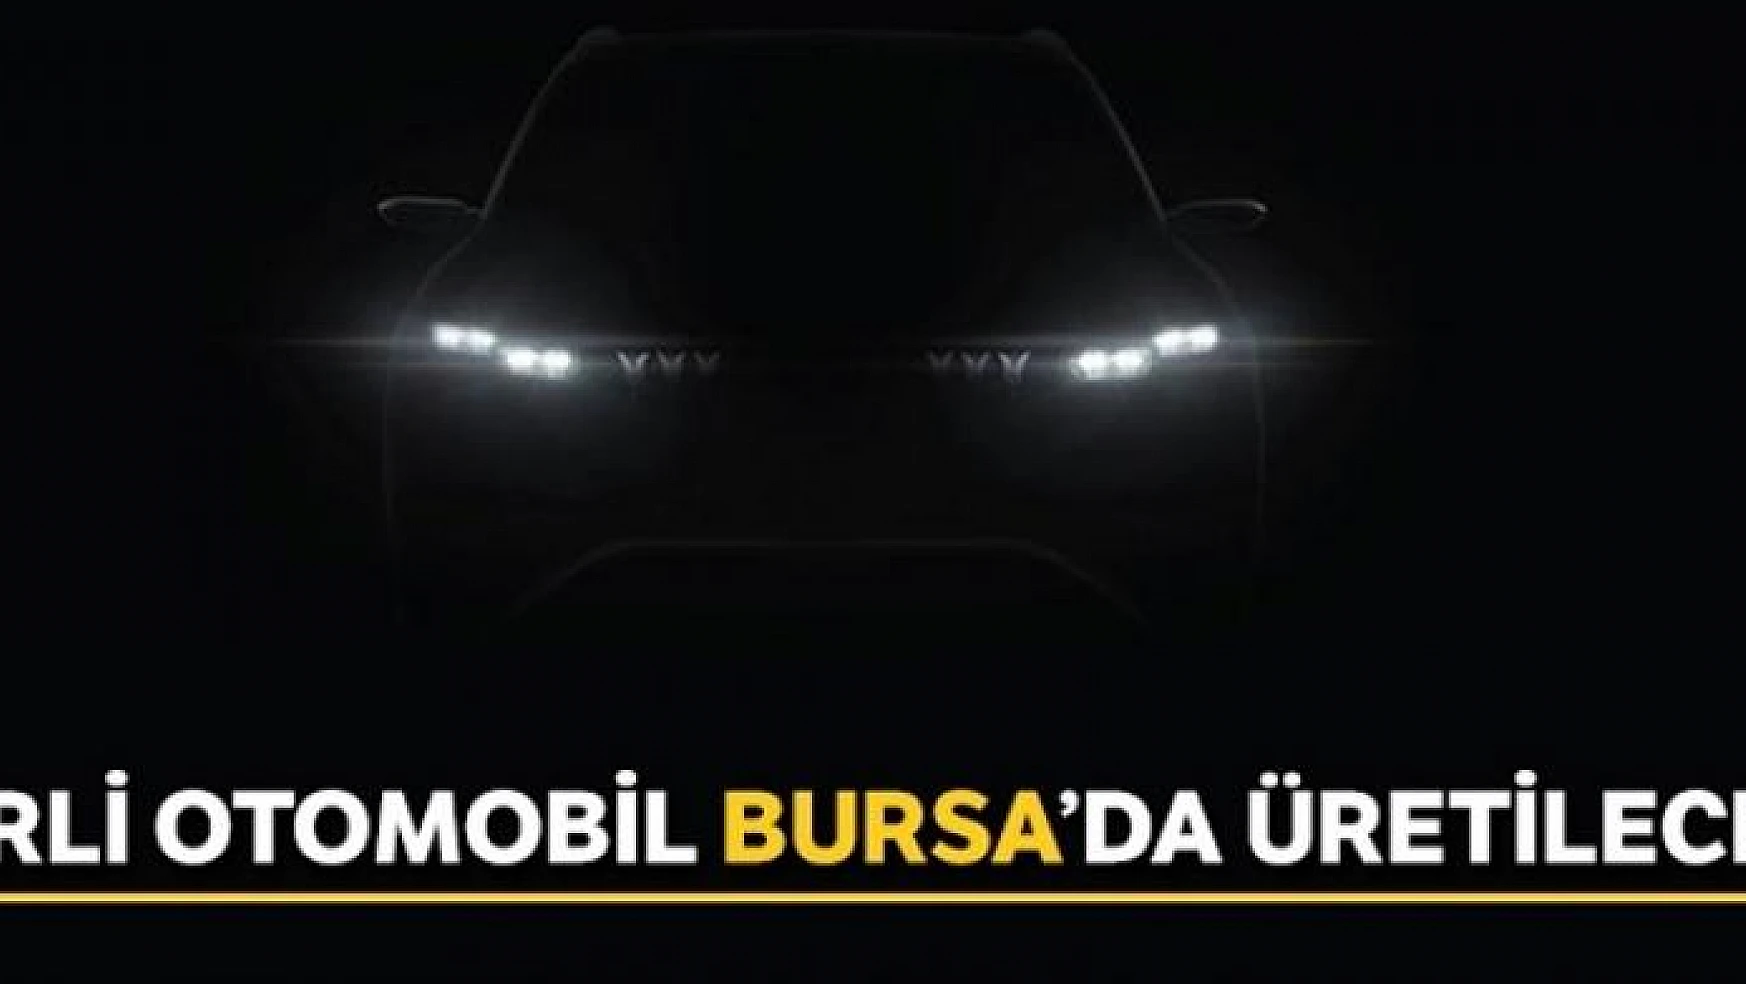 Yerli otomobil Bursa'da üretilecek, işte detaylar...